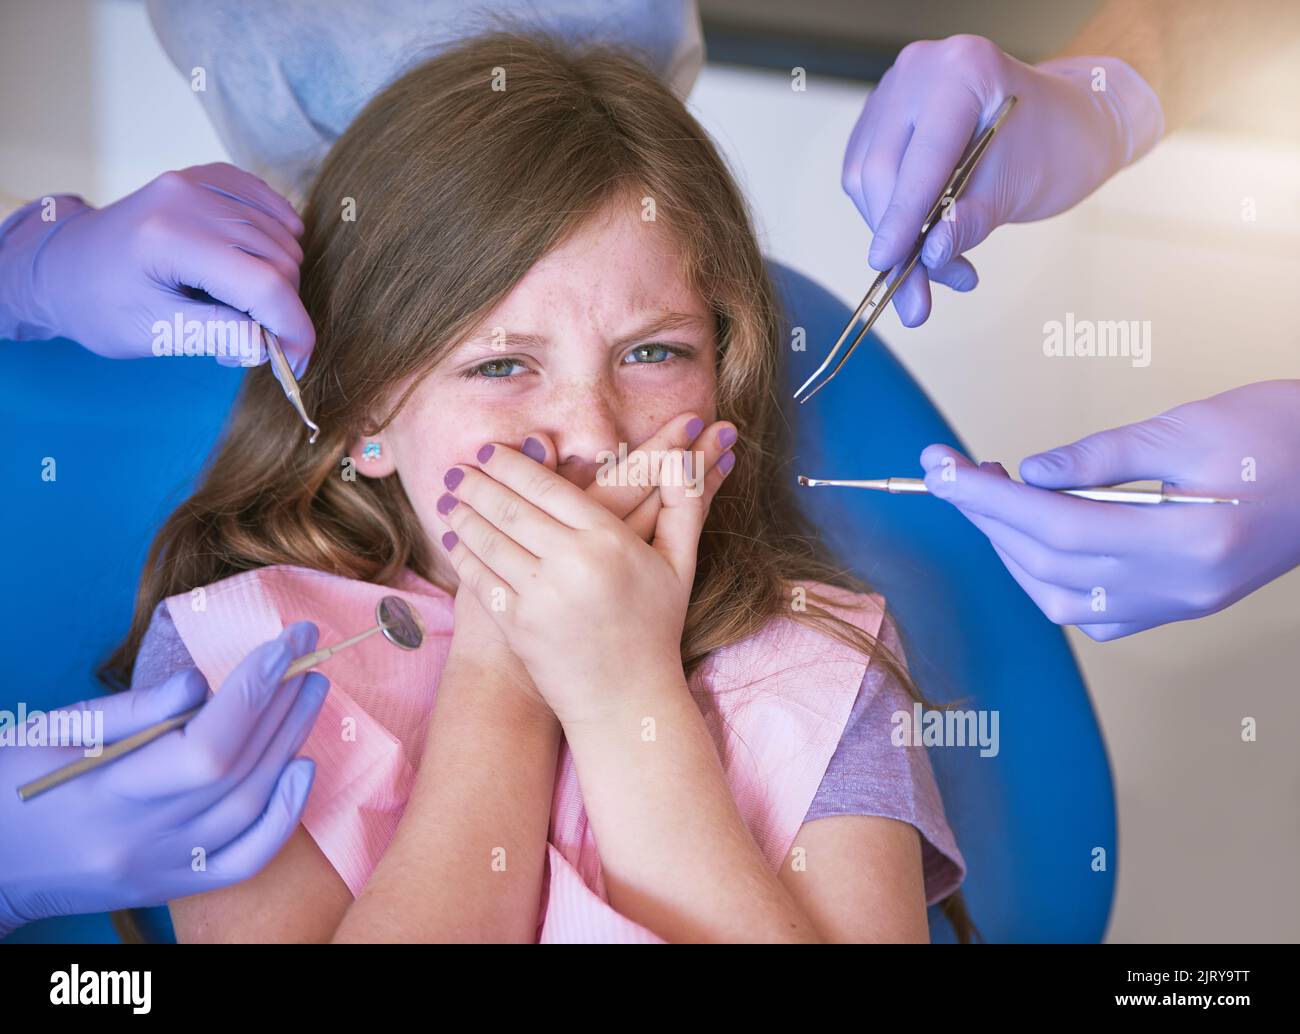 Zahnarztbesuche können beängstigend sein. Ein kleines Mädchen, das erschrocken aussieht, als Zahnärzte sich bereit machen, sie zu untersuchen. Stockfoto